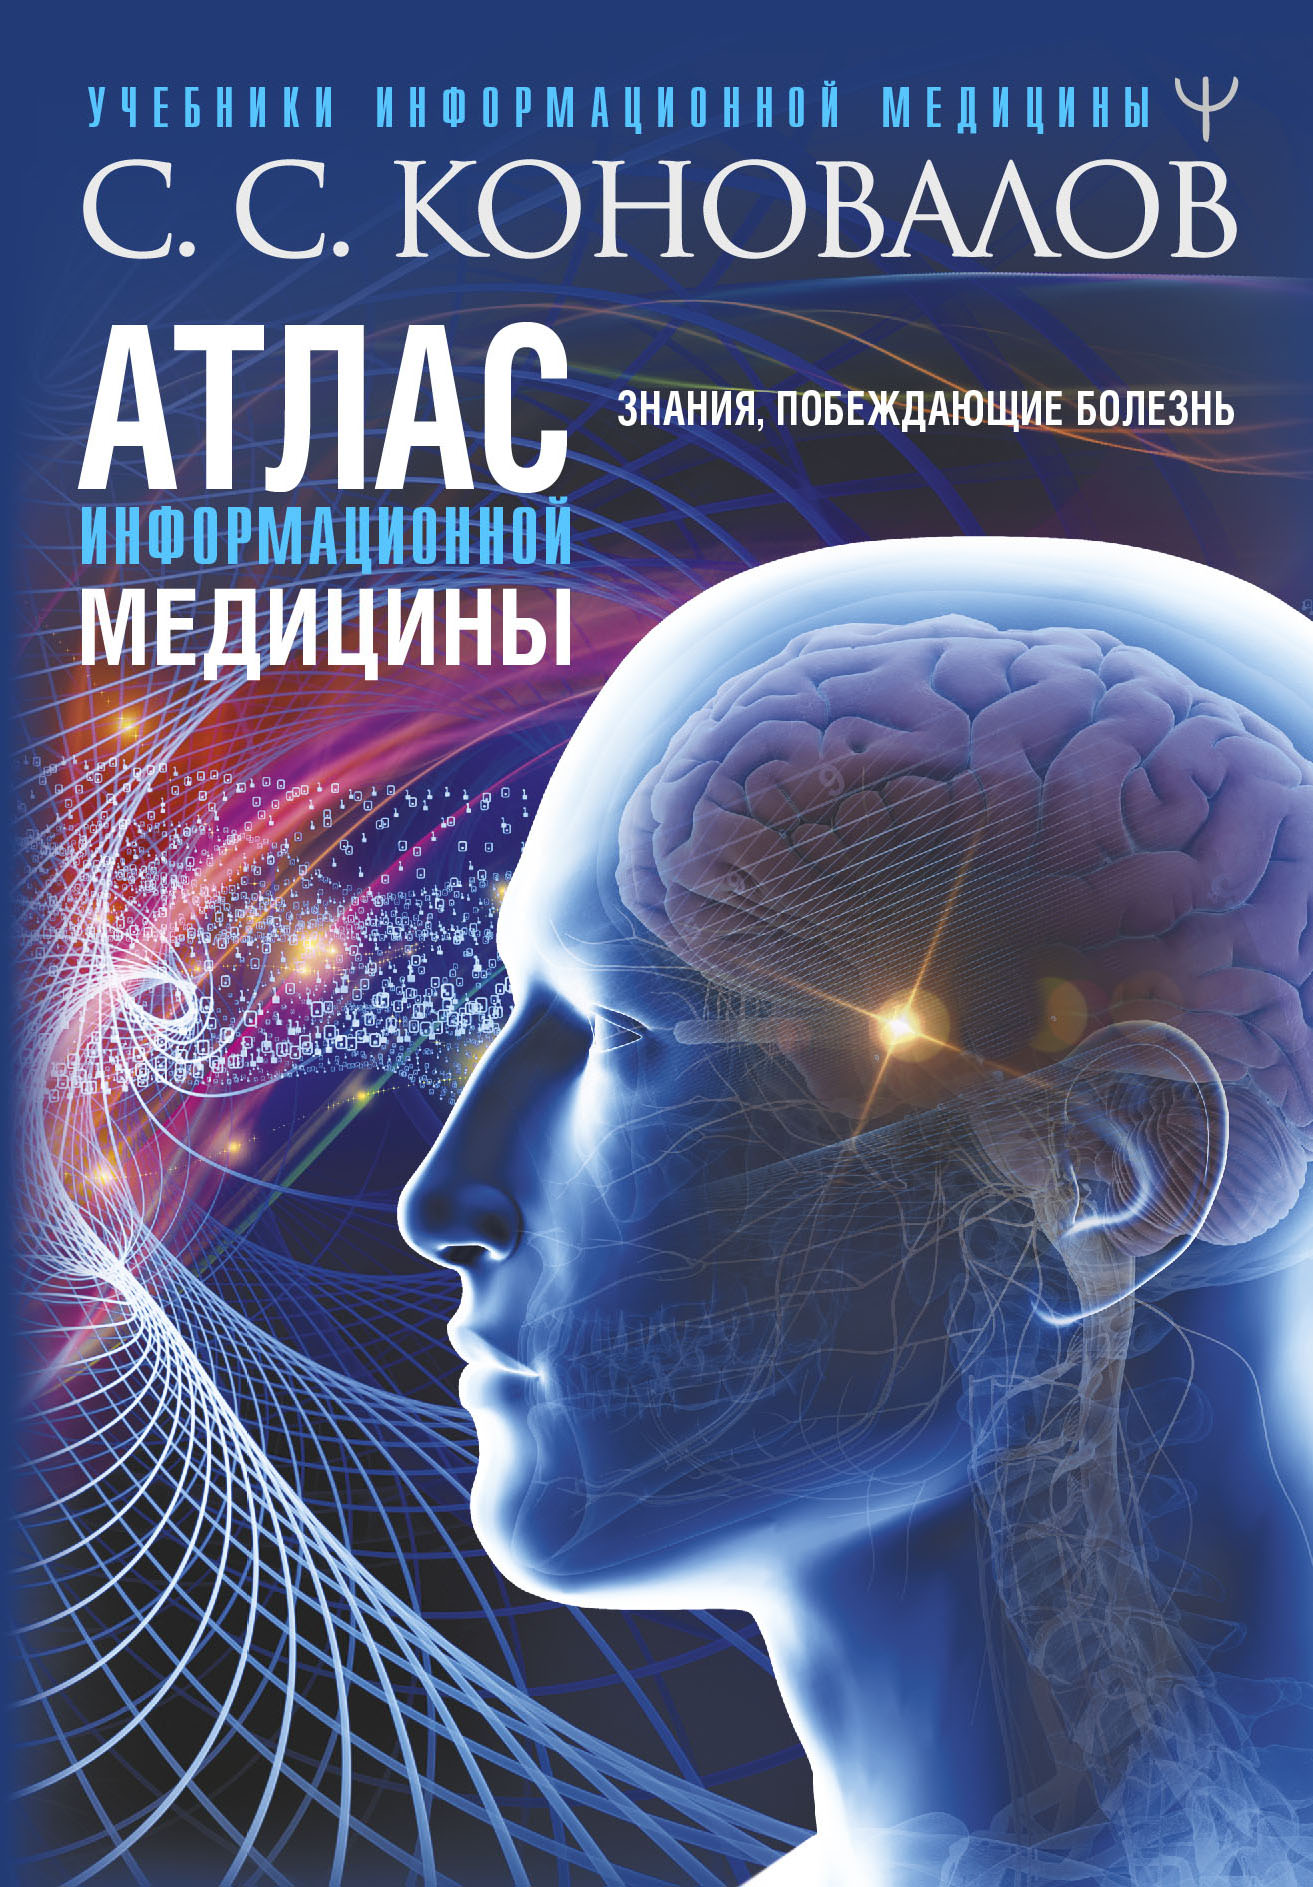 Новая книга С.С.Коновалова  "Атлас Информационной медицины. Знания, побеждающие болезнь!" поступила в продажу.